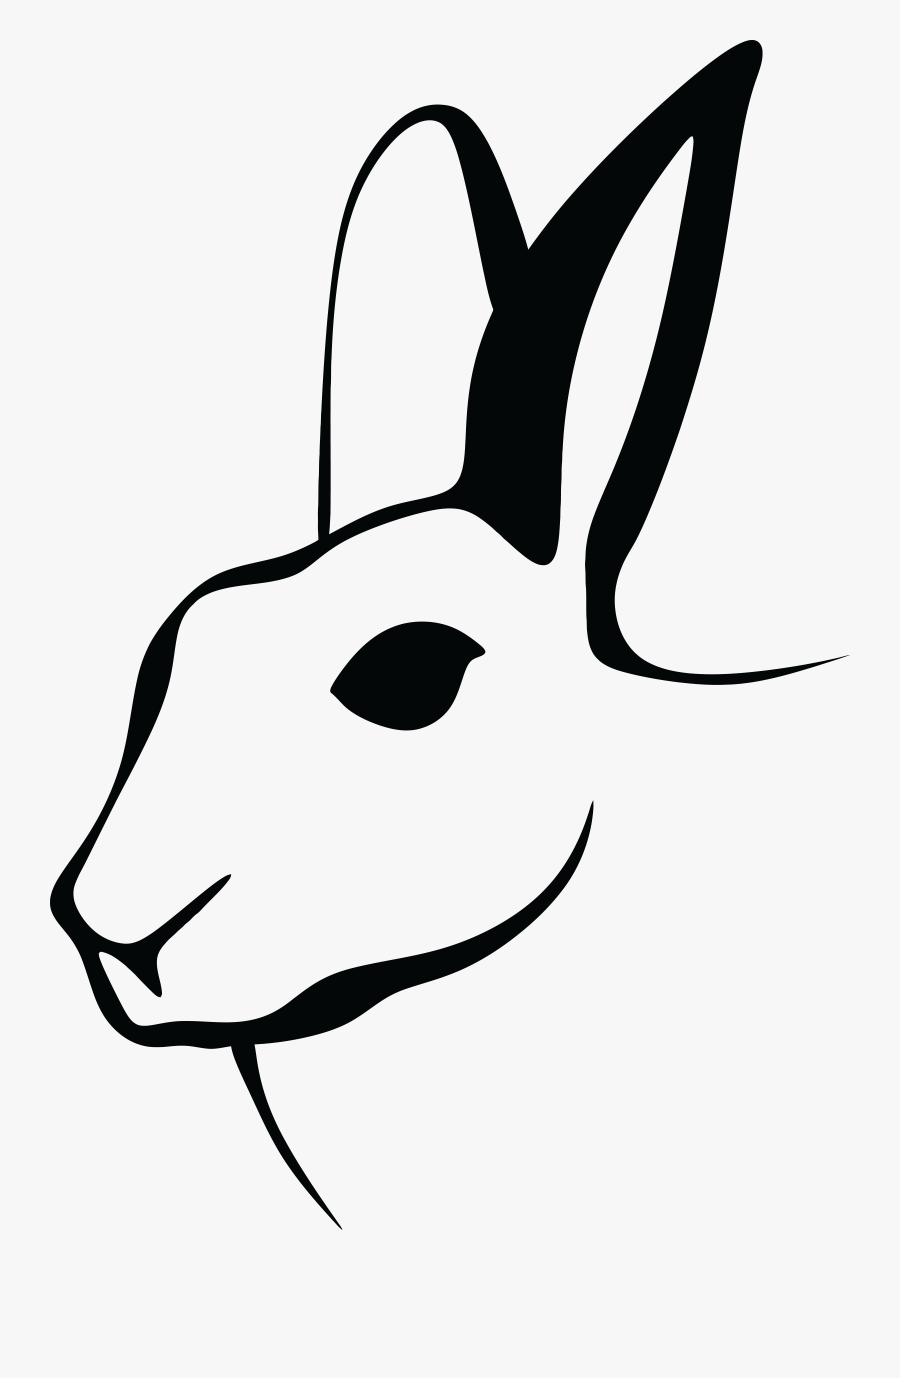 Stylized Rabbit Line Art Clip Arts, Transparent Clipart